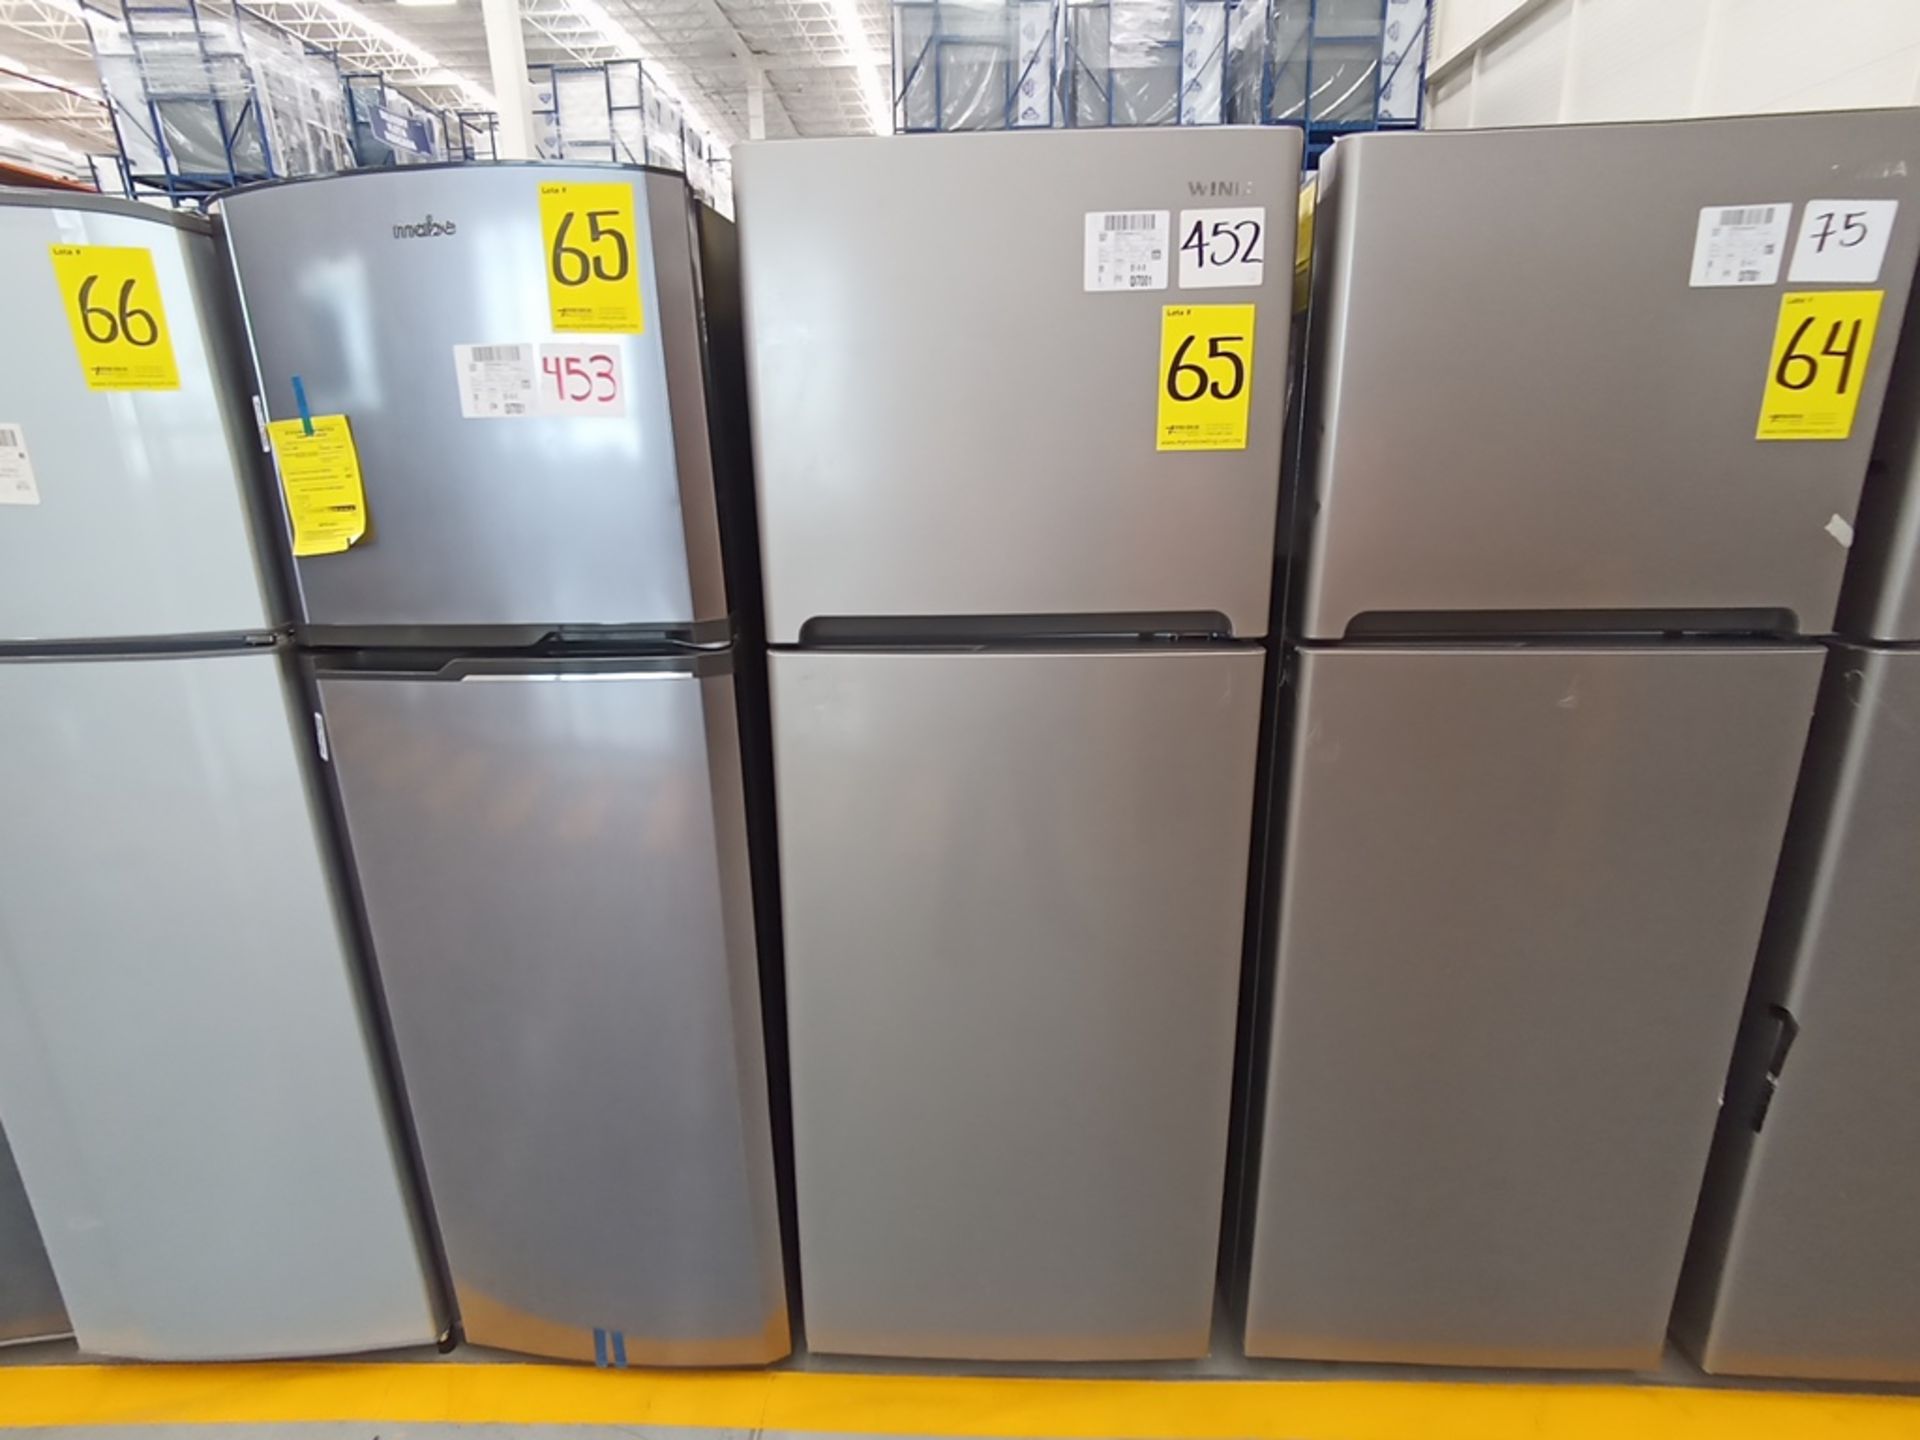 Lote de 2 Refrigeradores contiene: 1 Refrigerador Marca Winia, Modelo DFR-32210GNV, Serie MR216N130 - Image 7 of 15